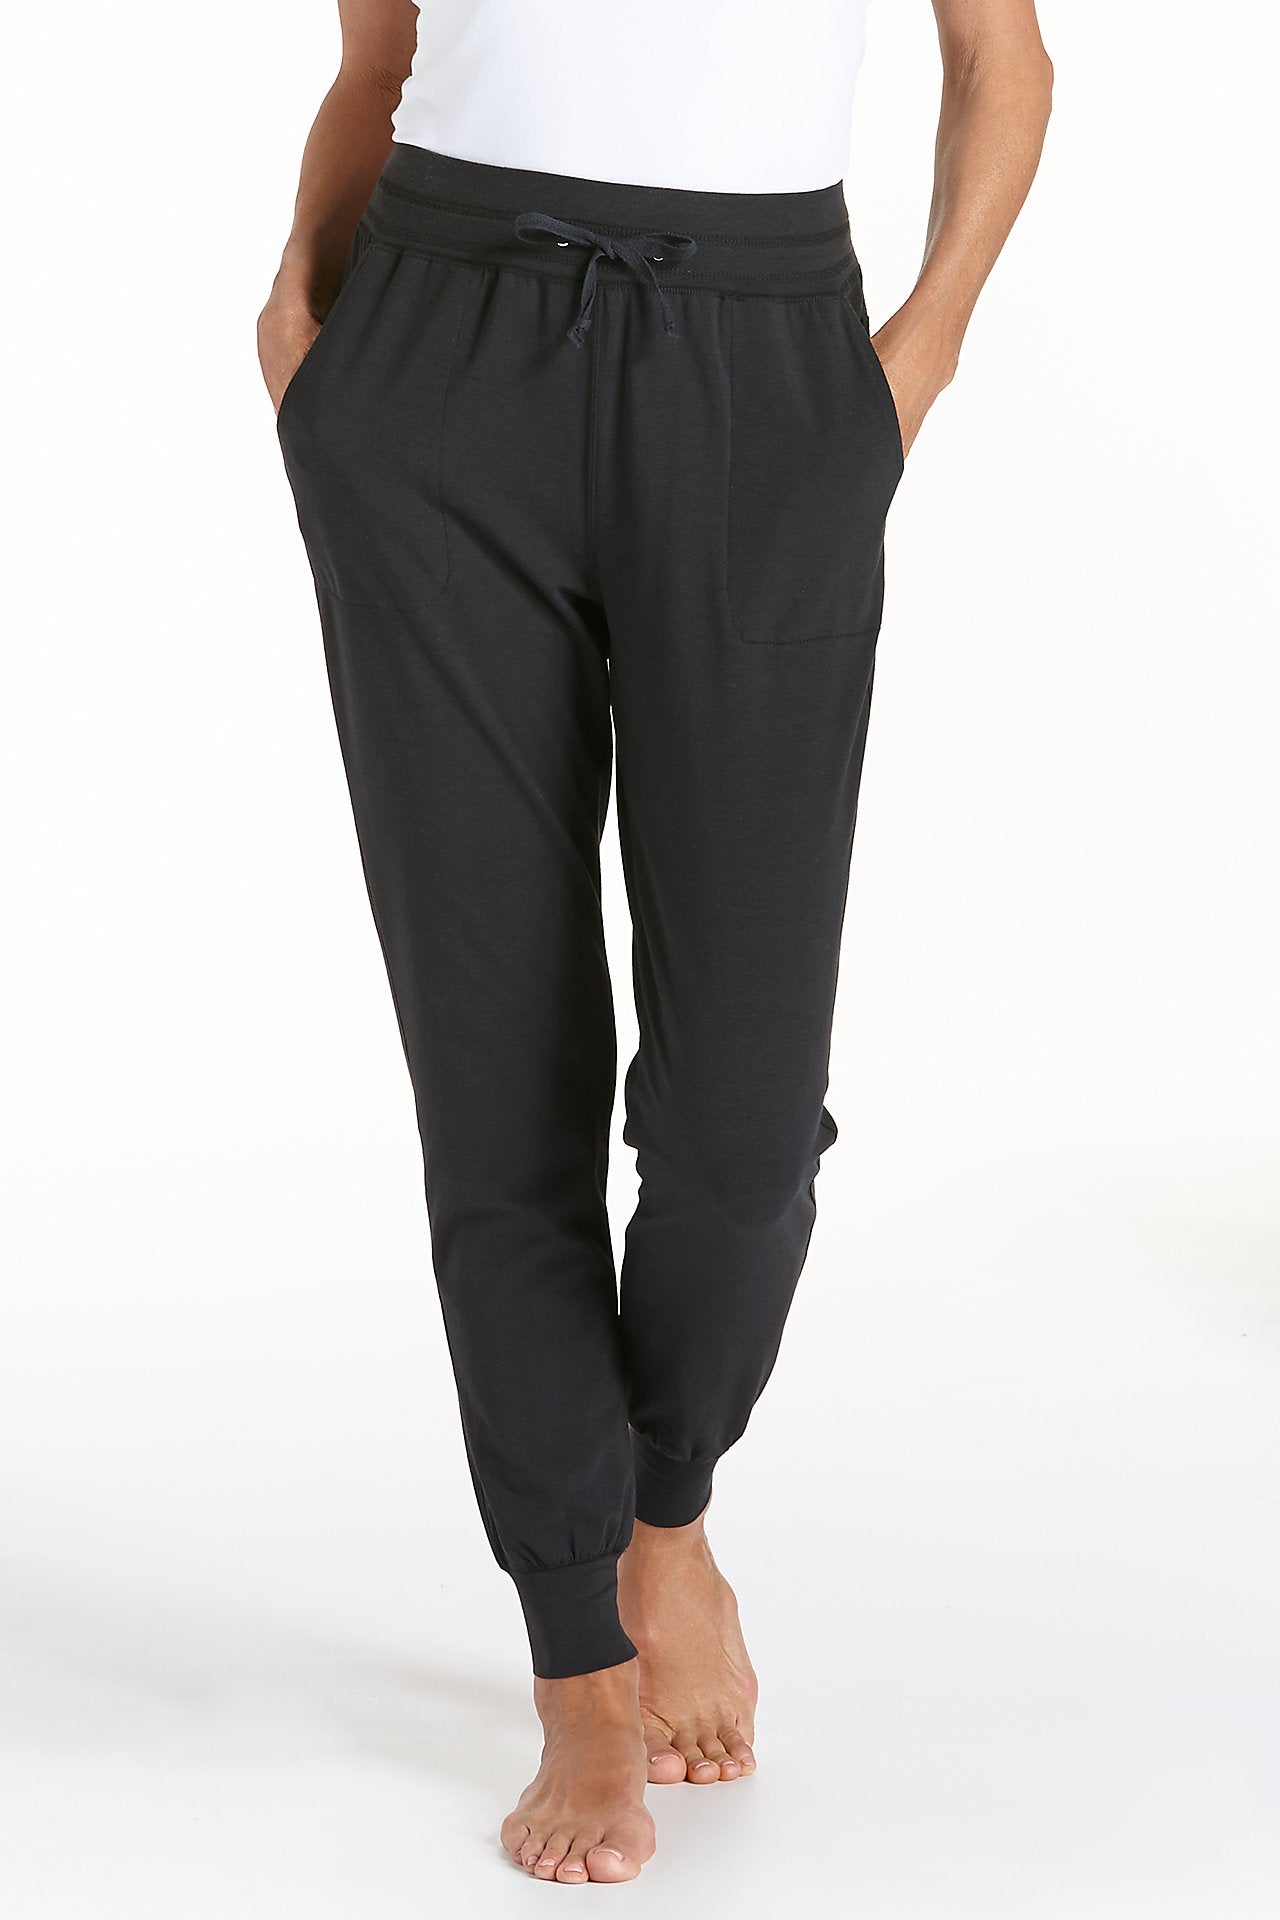 Pantalon confort femme coloris noir - DistriCenter